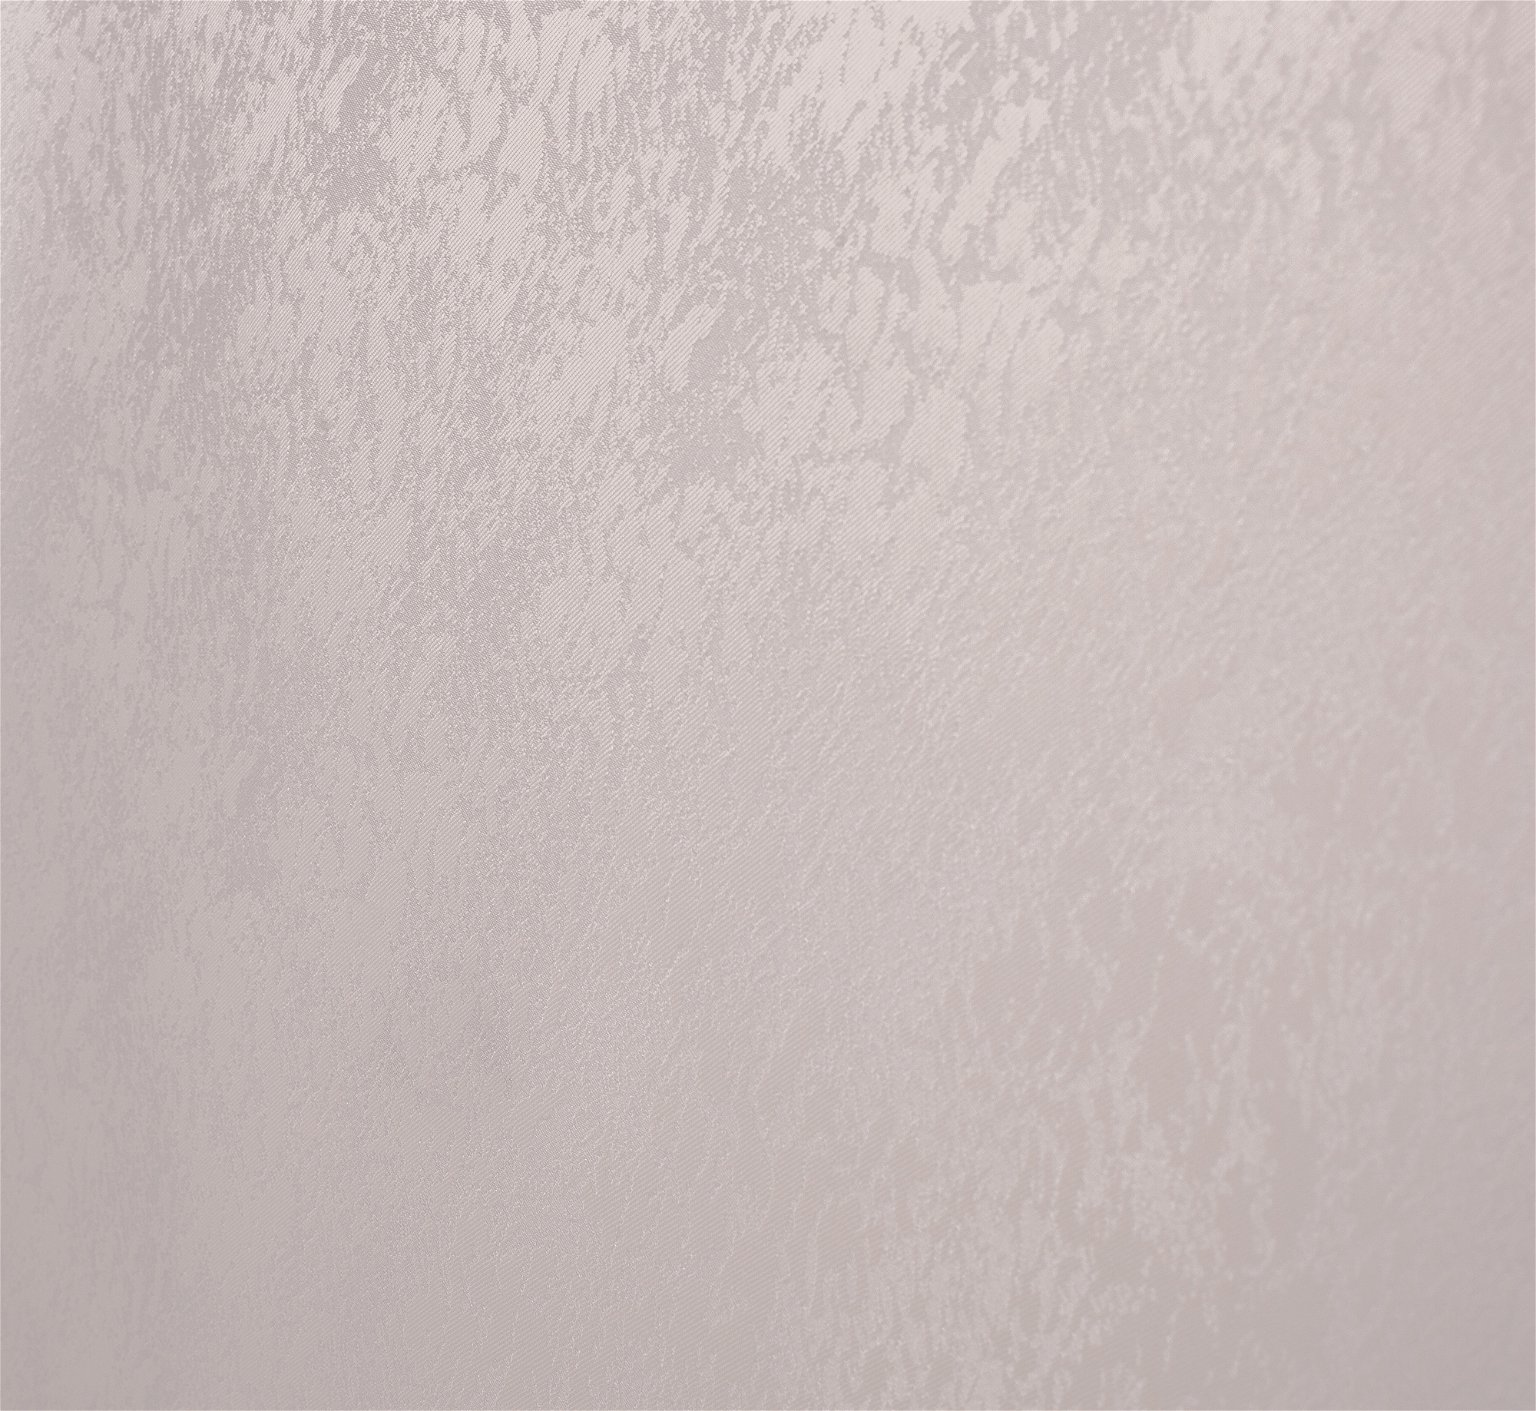 Klasikinė ritininė užuolaida LONDON, kreminės sp., 60 x 170 cm, 100 % poliesteris - 2